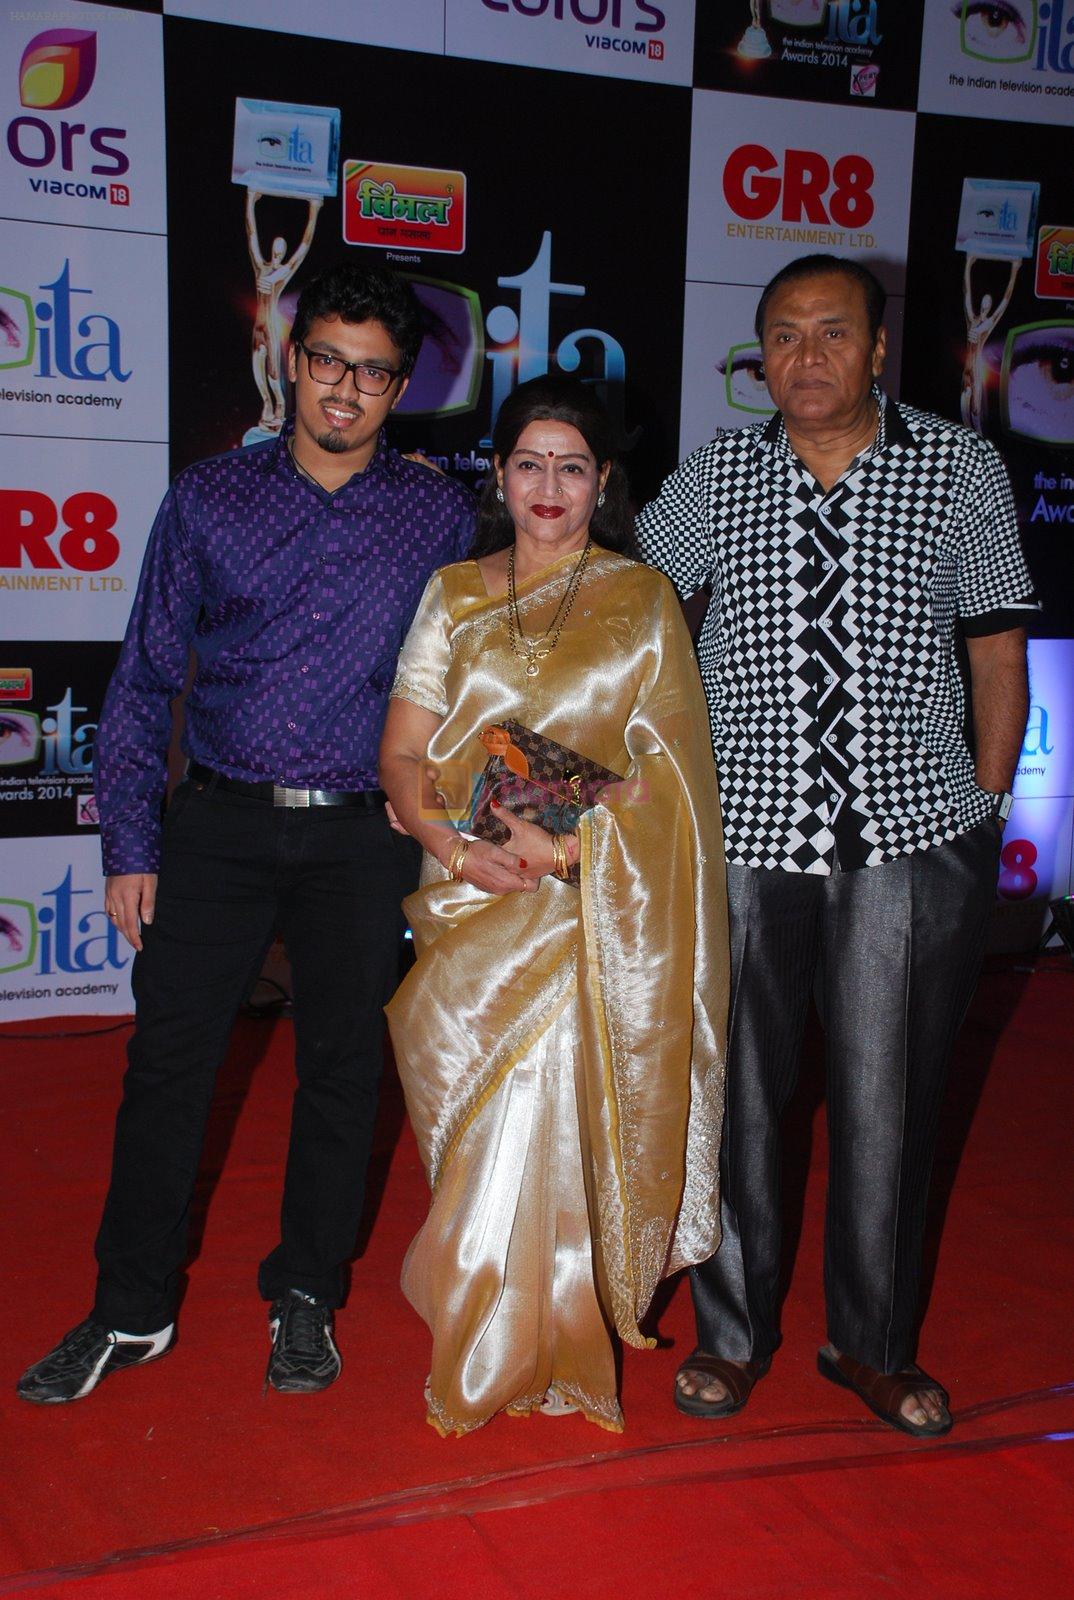 at ITA Awards red carpet in Mumbai on 1st Nov 2014